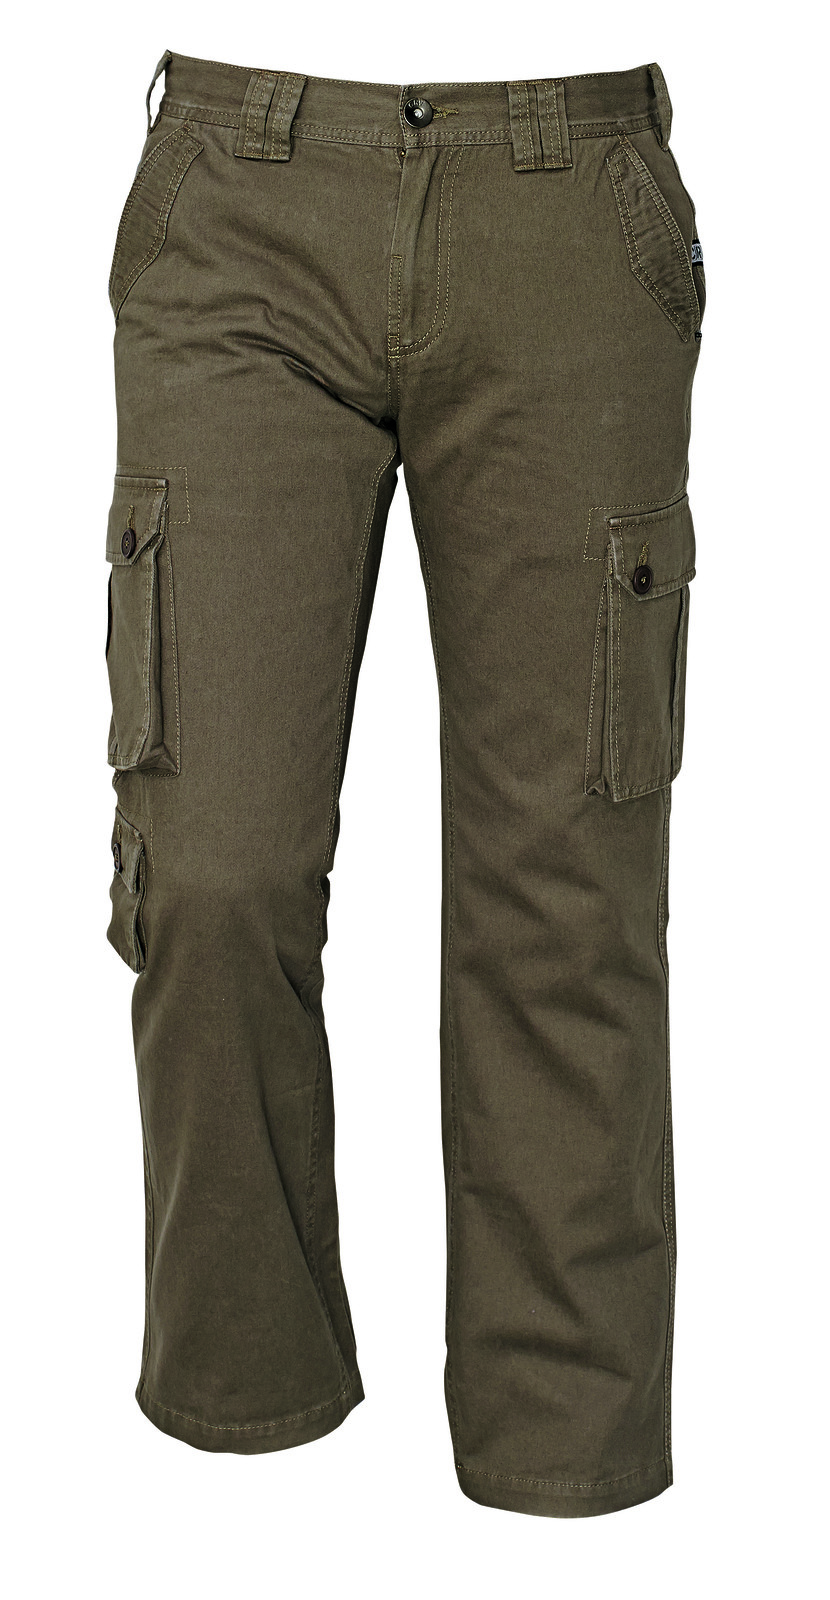 Pánske nohavice Chena kapsáče - veľkosť: XL, farba: olivová zelená